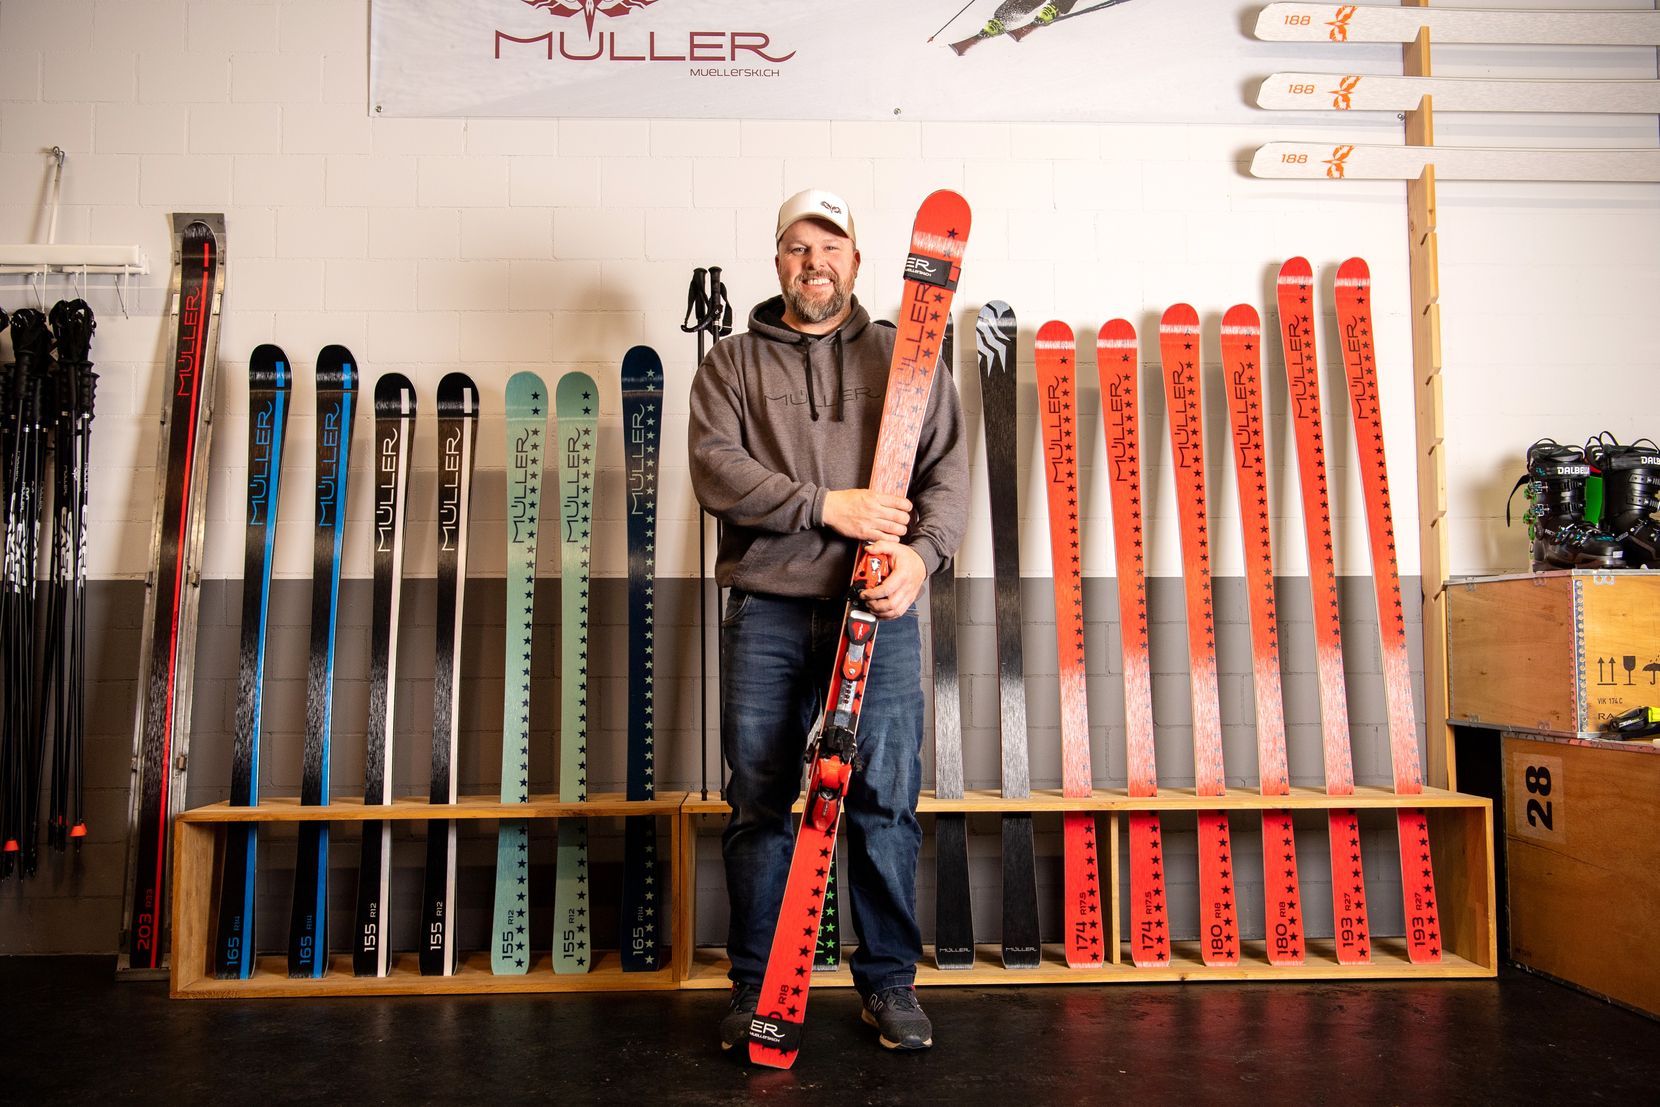 Ein Mann steht mit einem Paar Skis in der Hand vor noch mehr Skis.